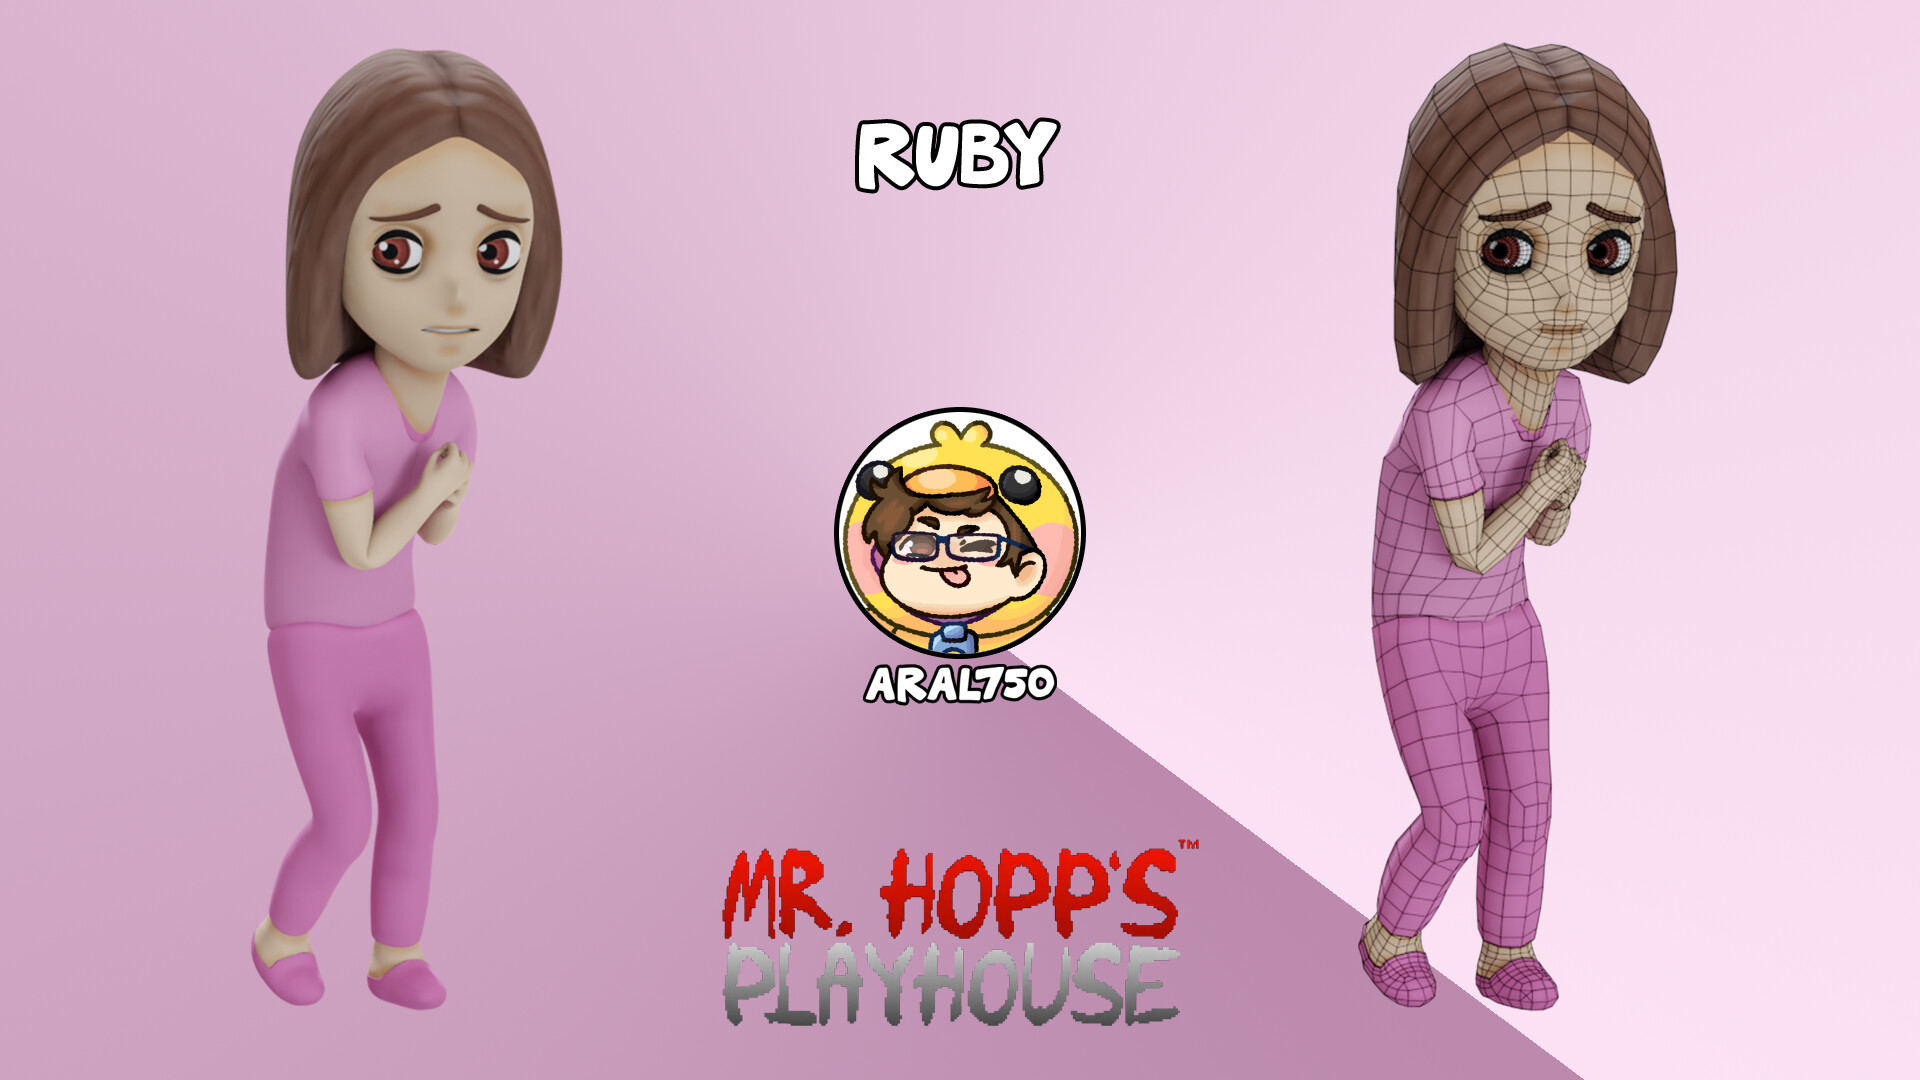 Hopps playhouse mr Mr Hopps